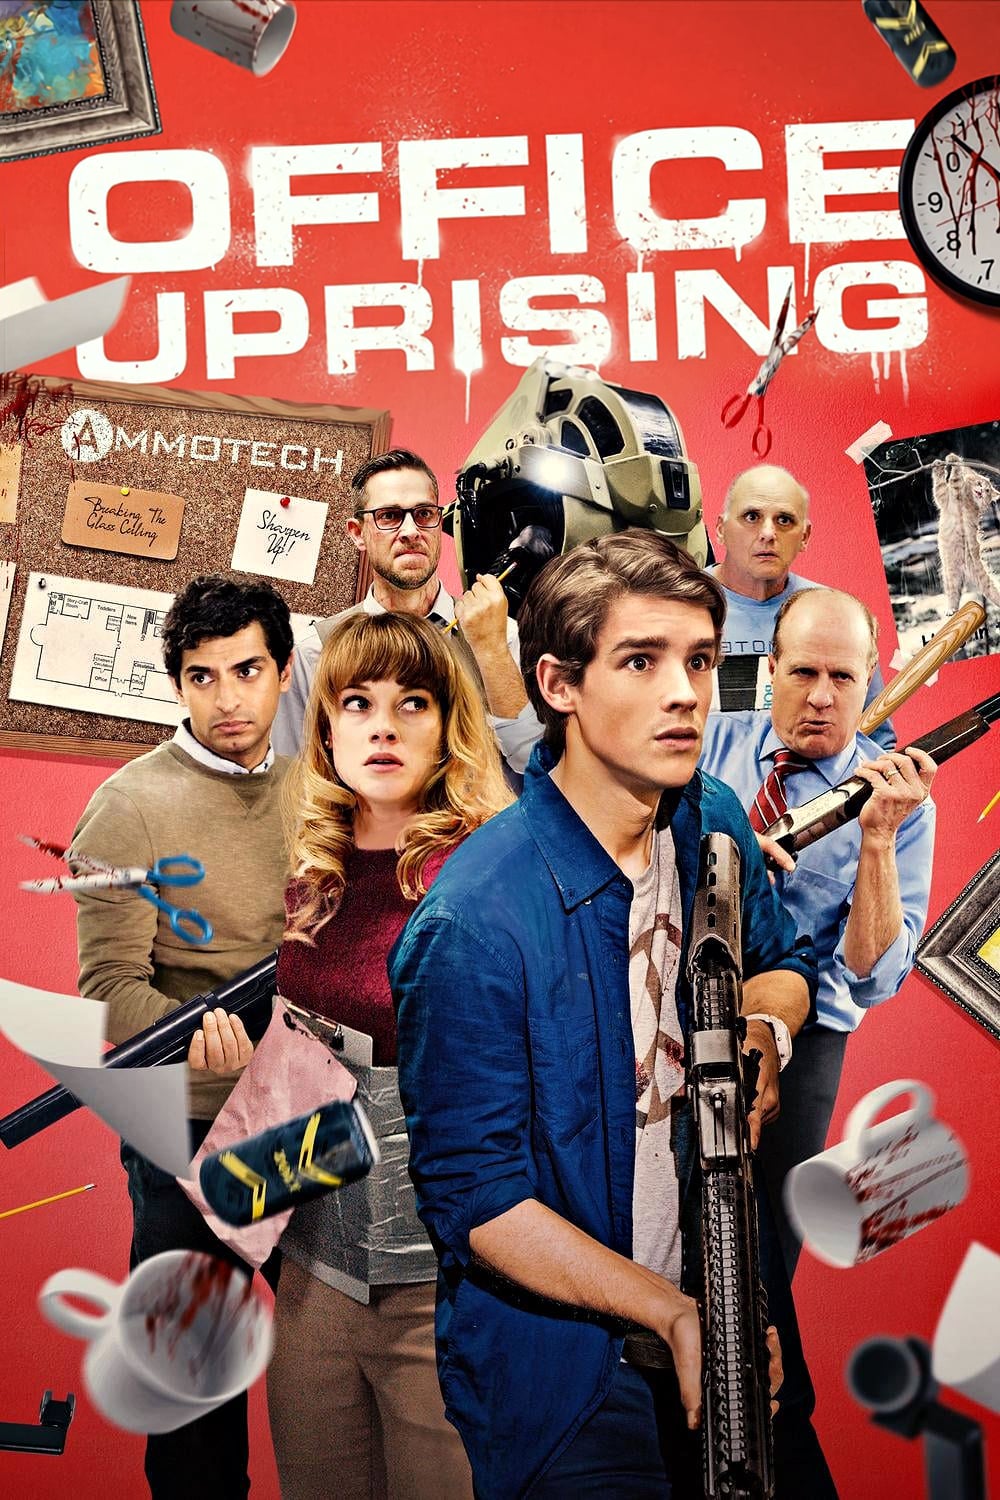 دانلود فیلم Office Uprising 2018 با دوبله فارسی